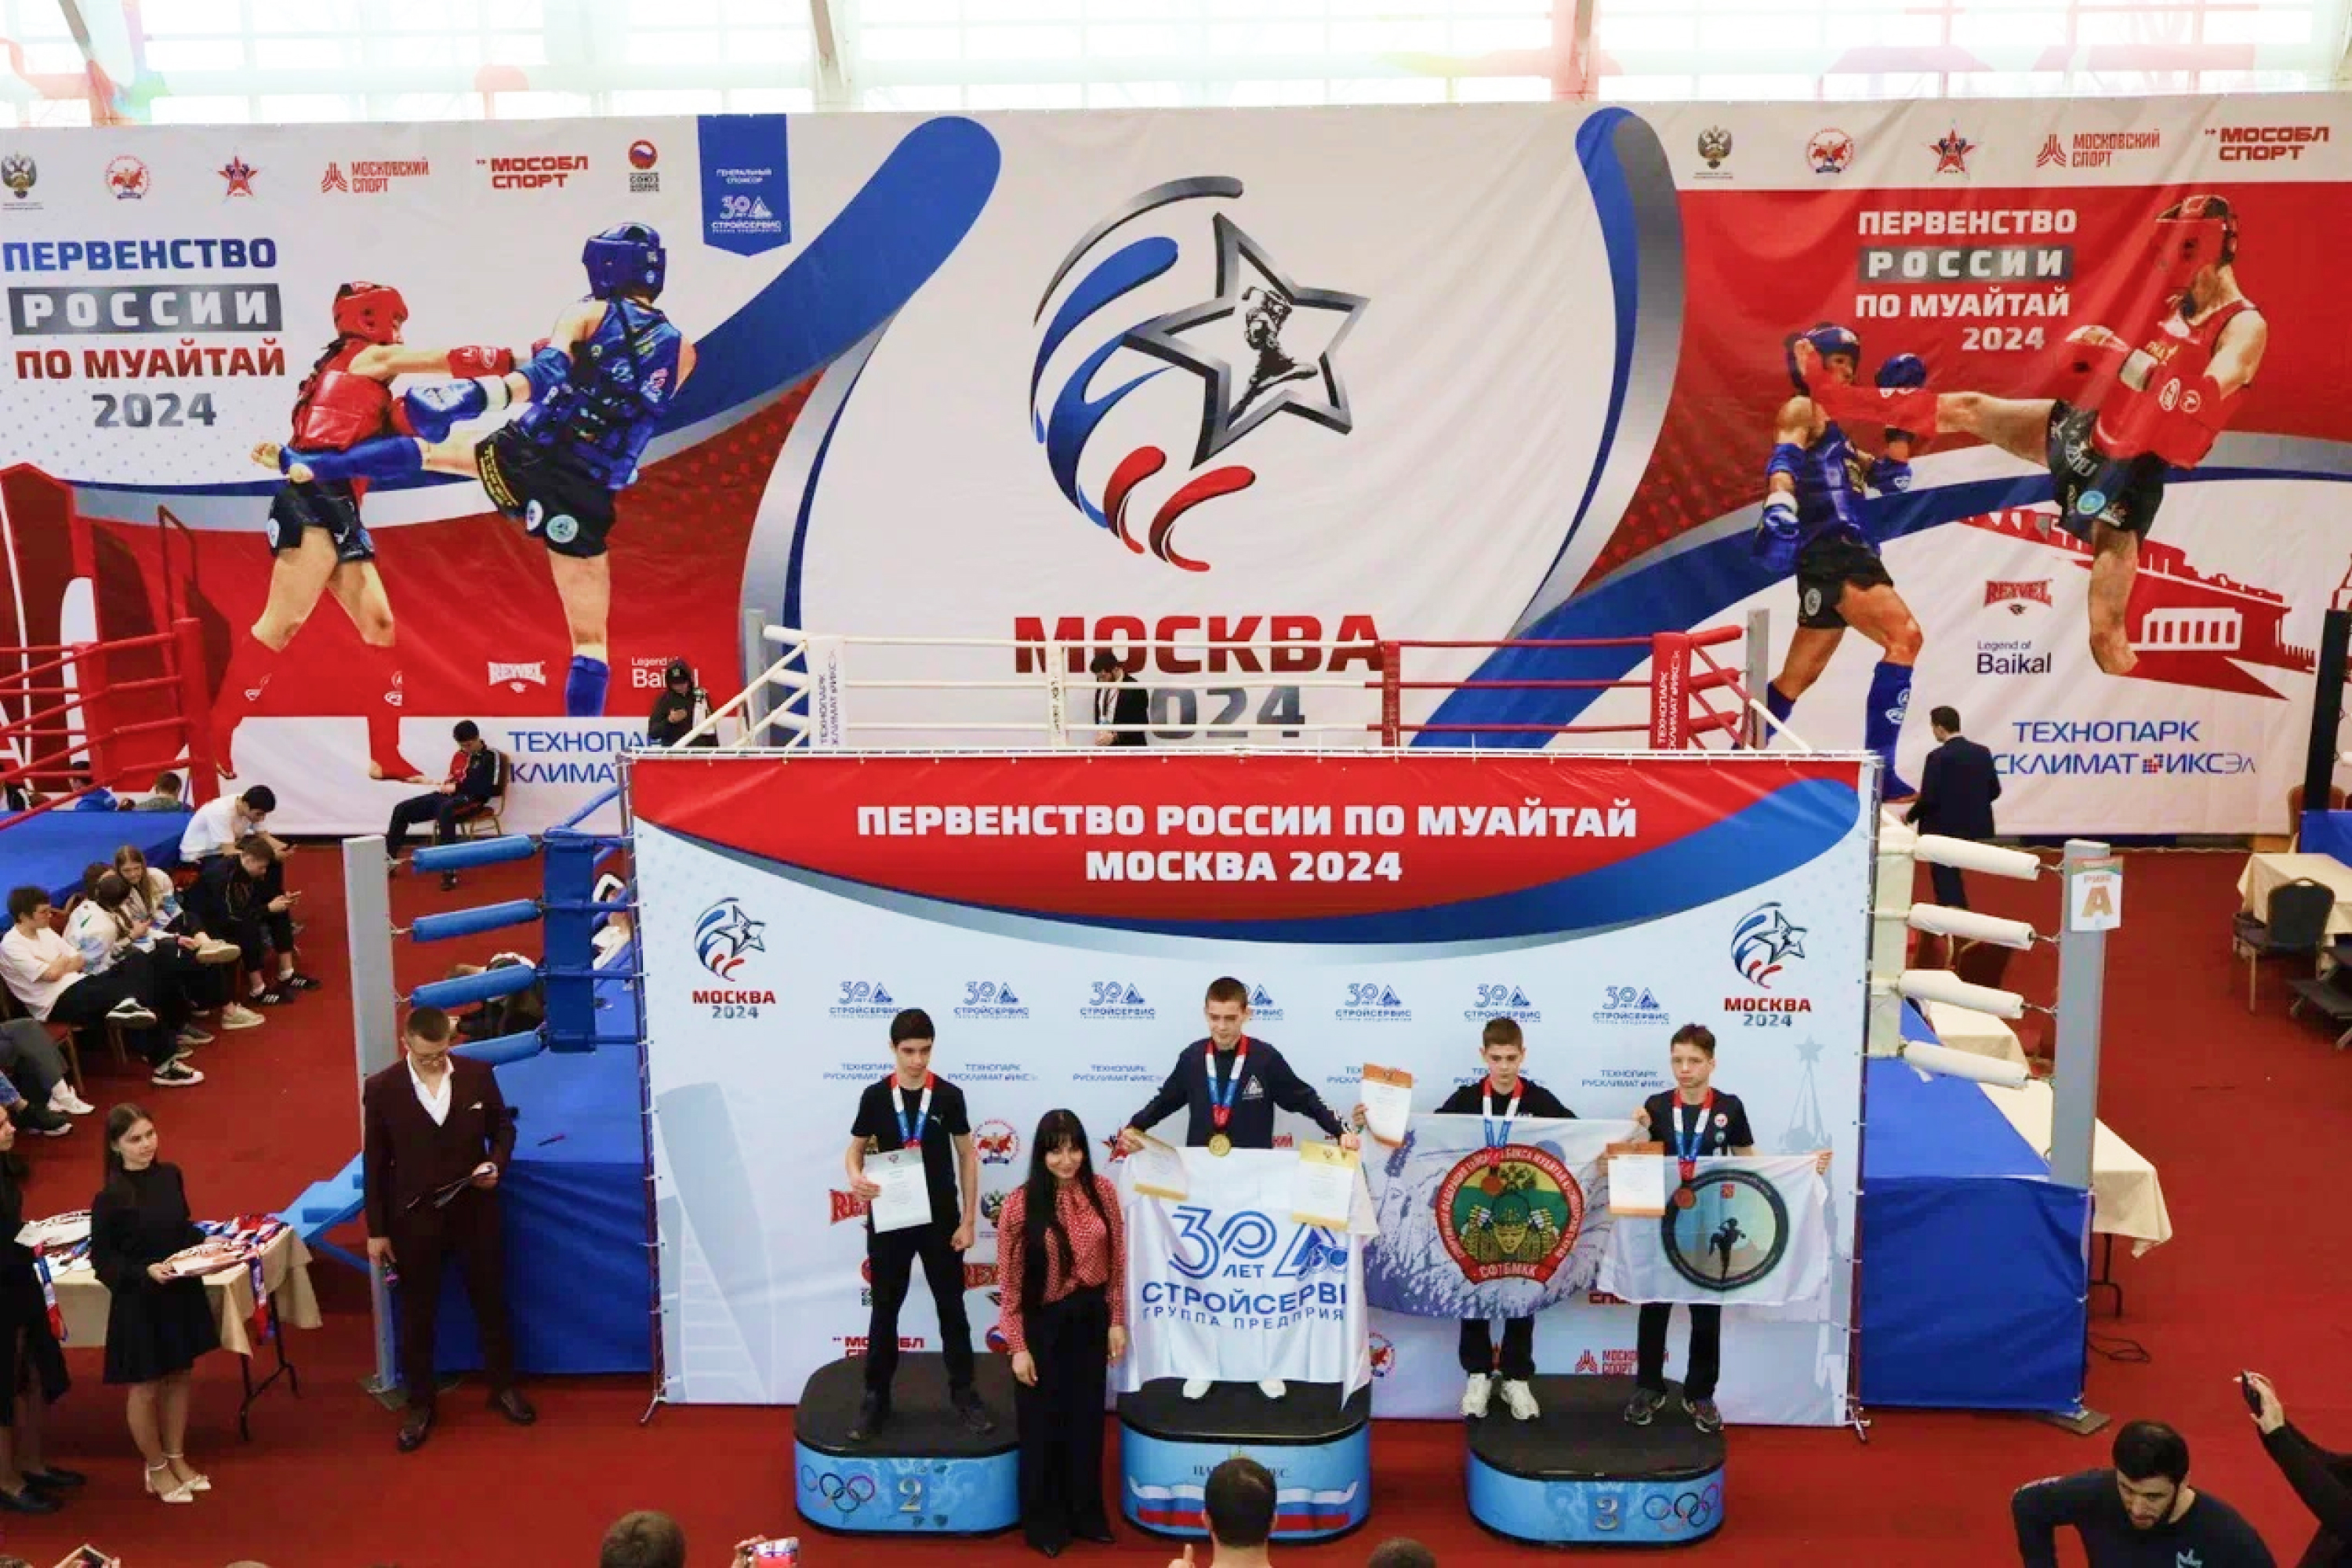 Сборная Кузбасса по муайтай стала бронзовым призером первенства России на соревнованиях в Московской области. Стройсервис